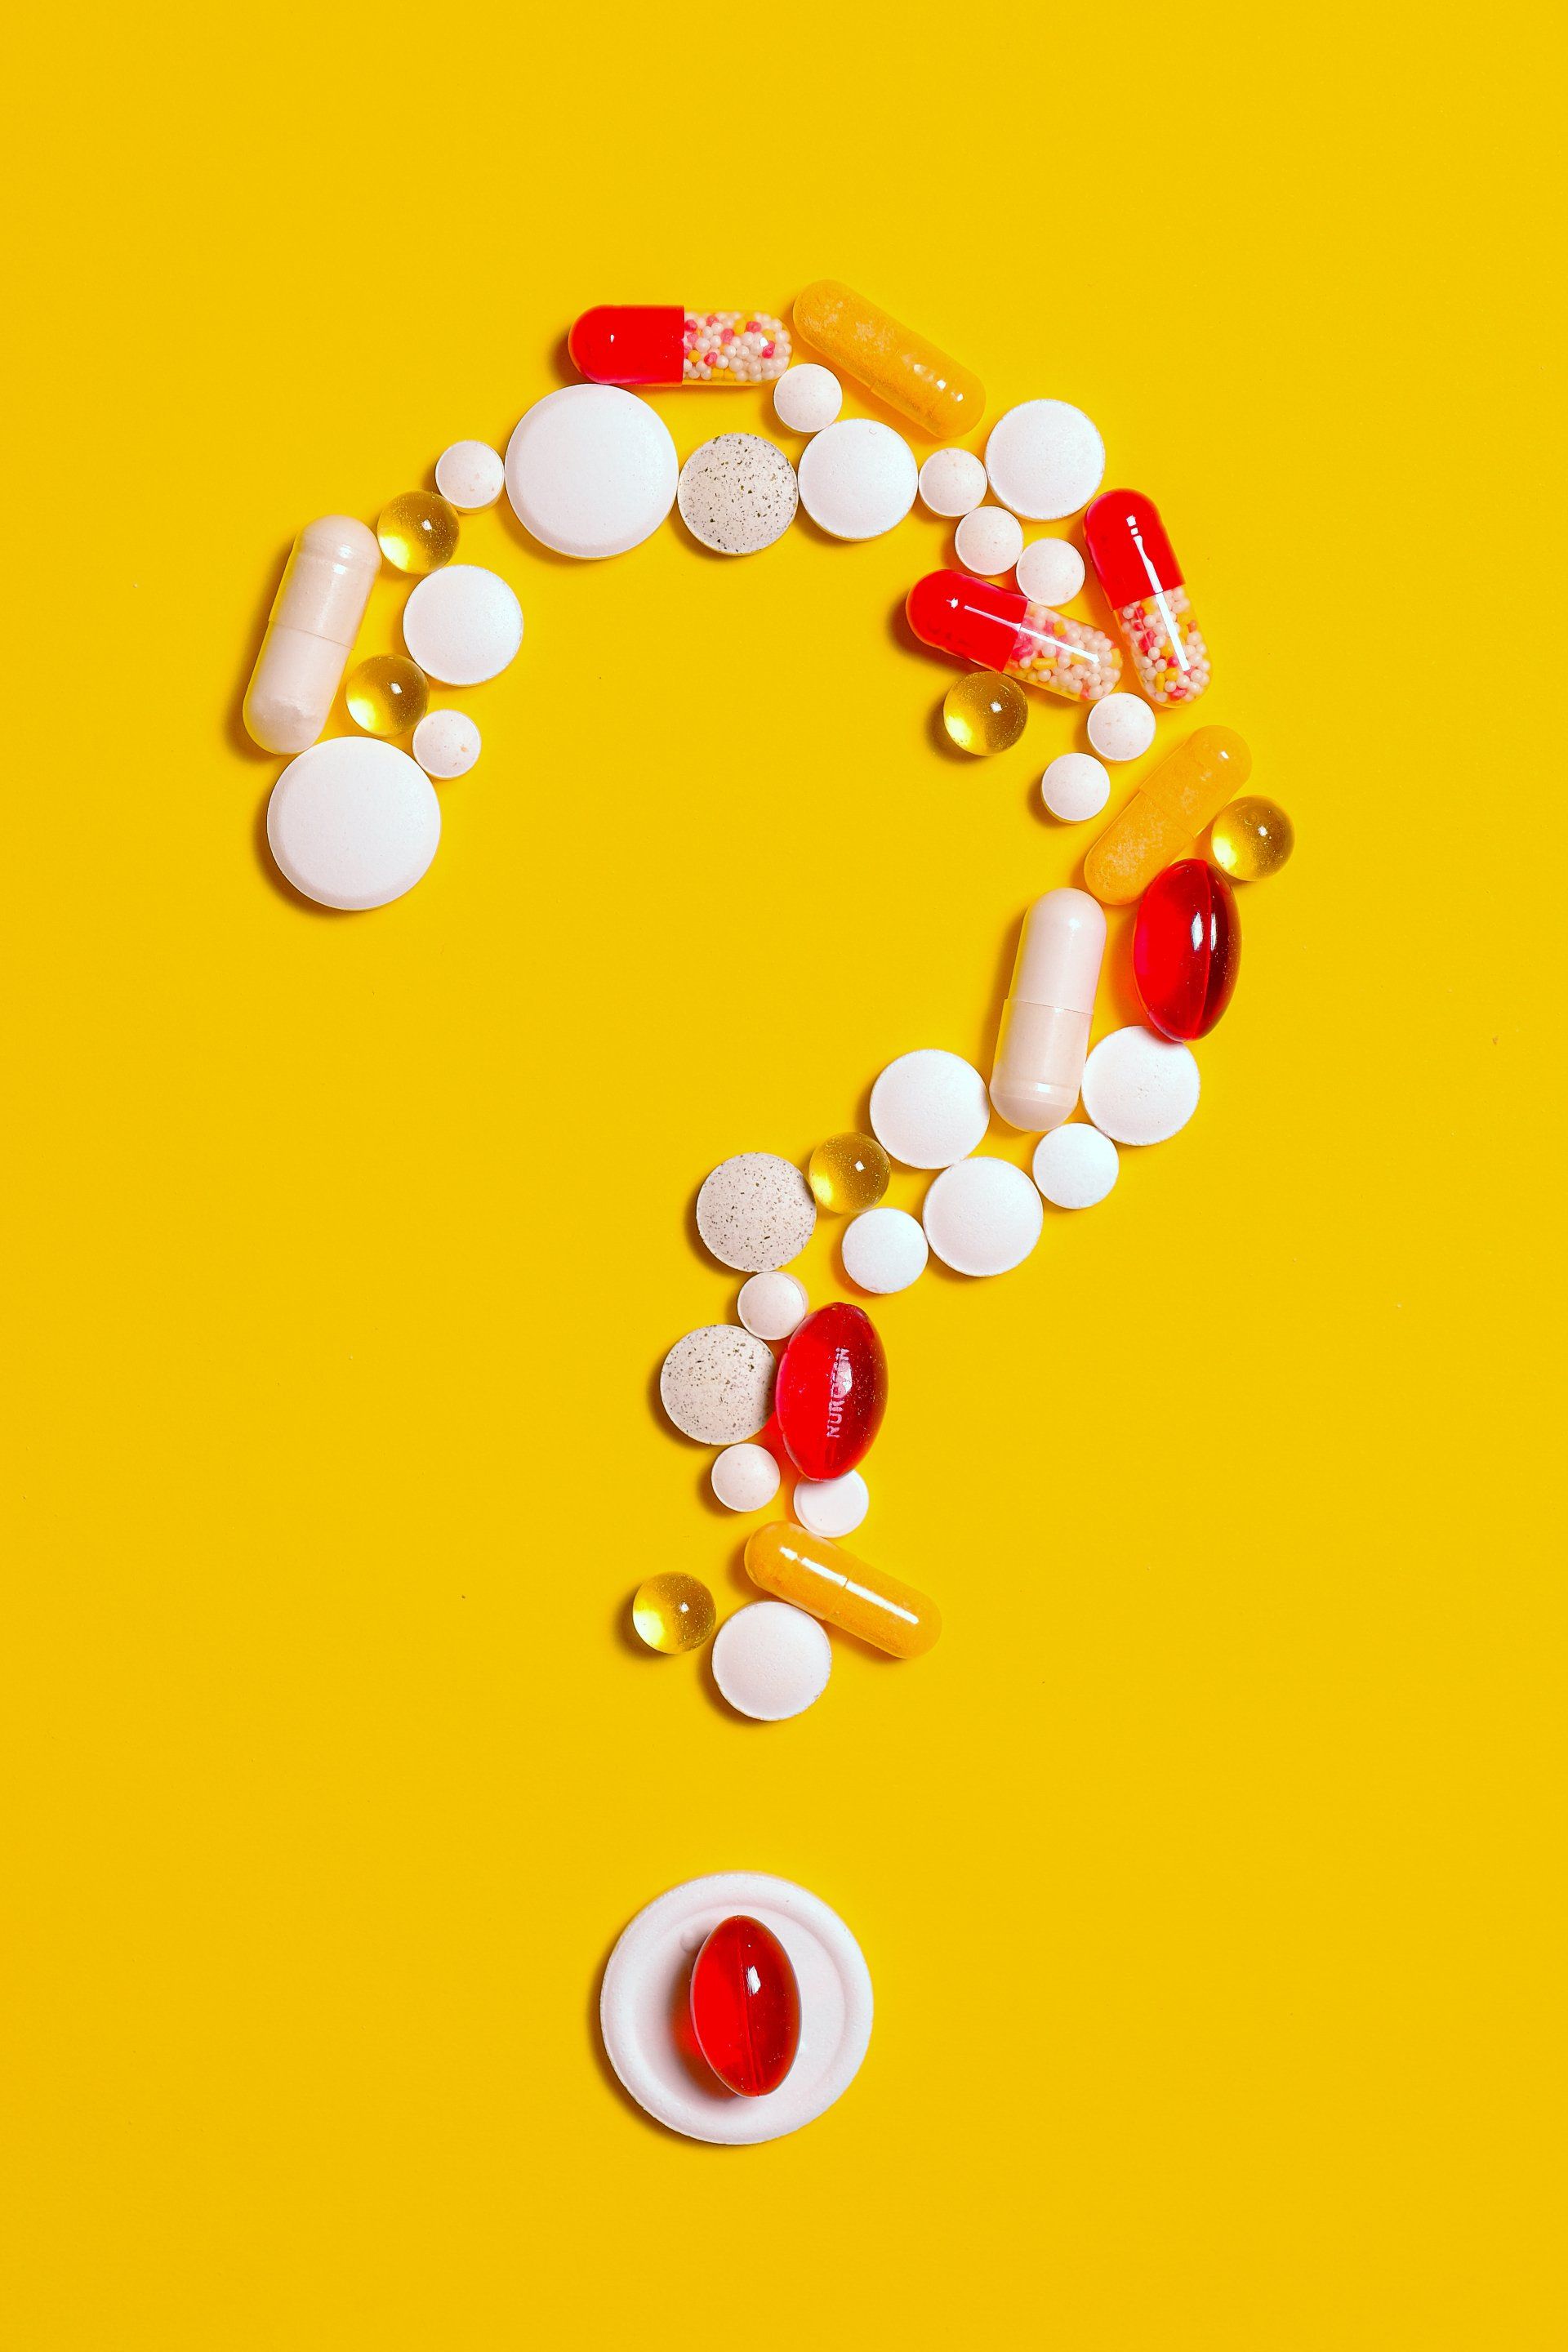 pills question mark